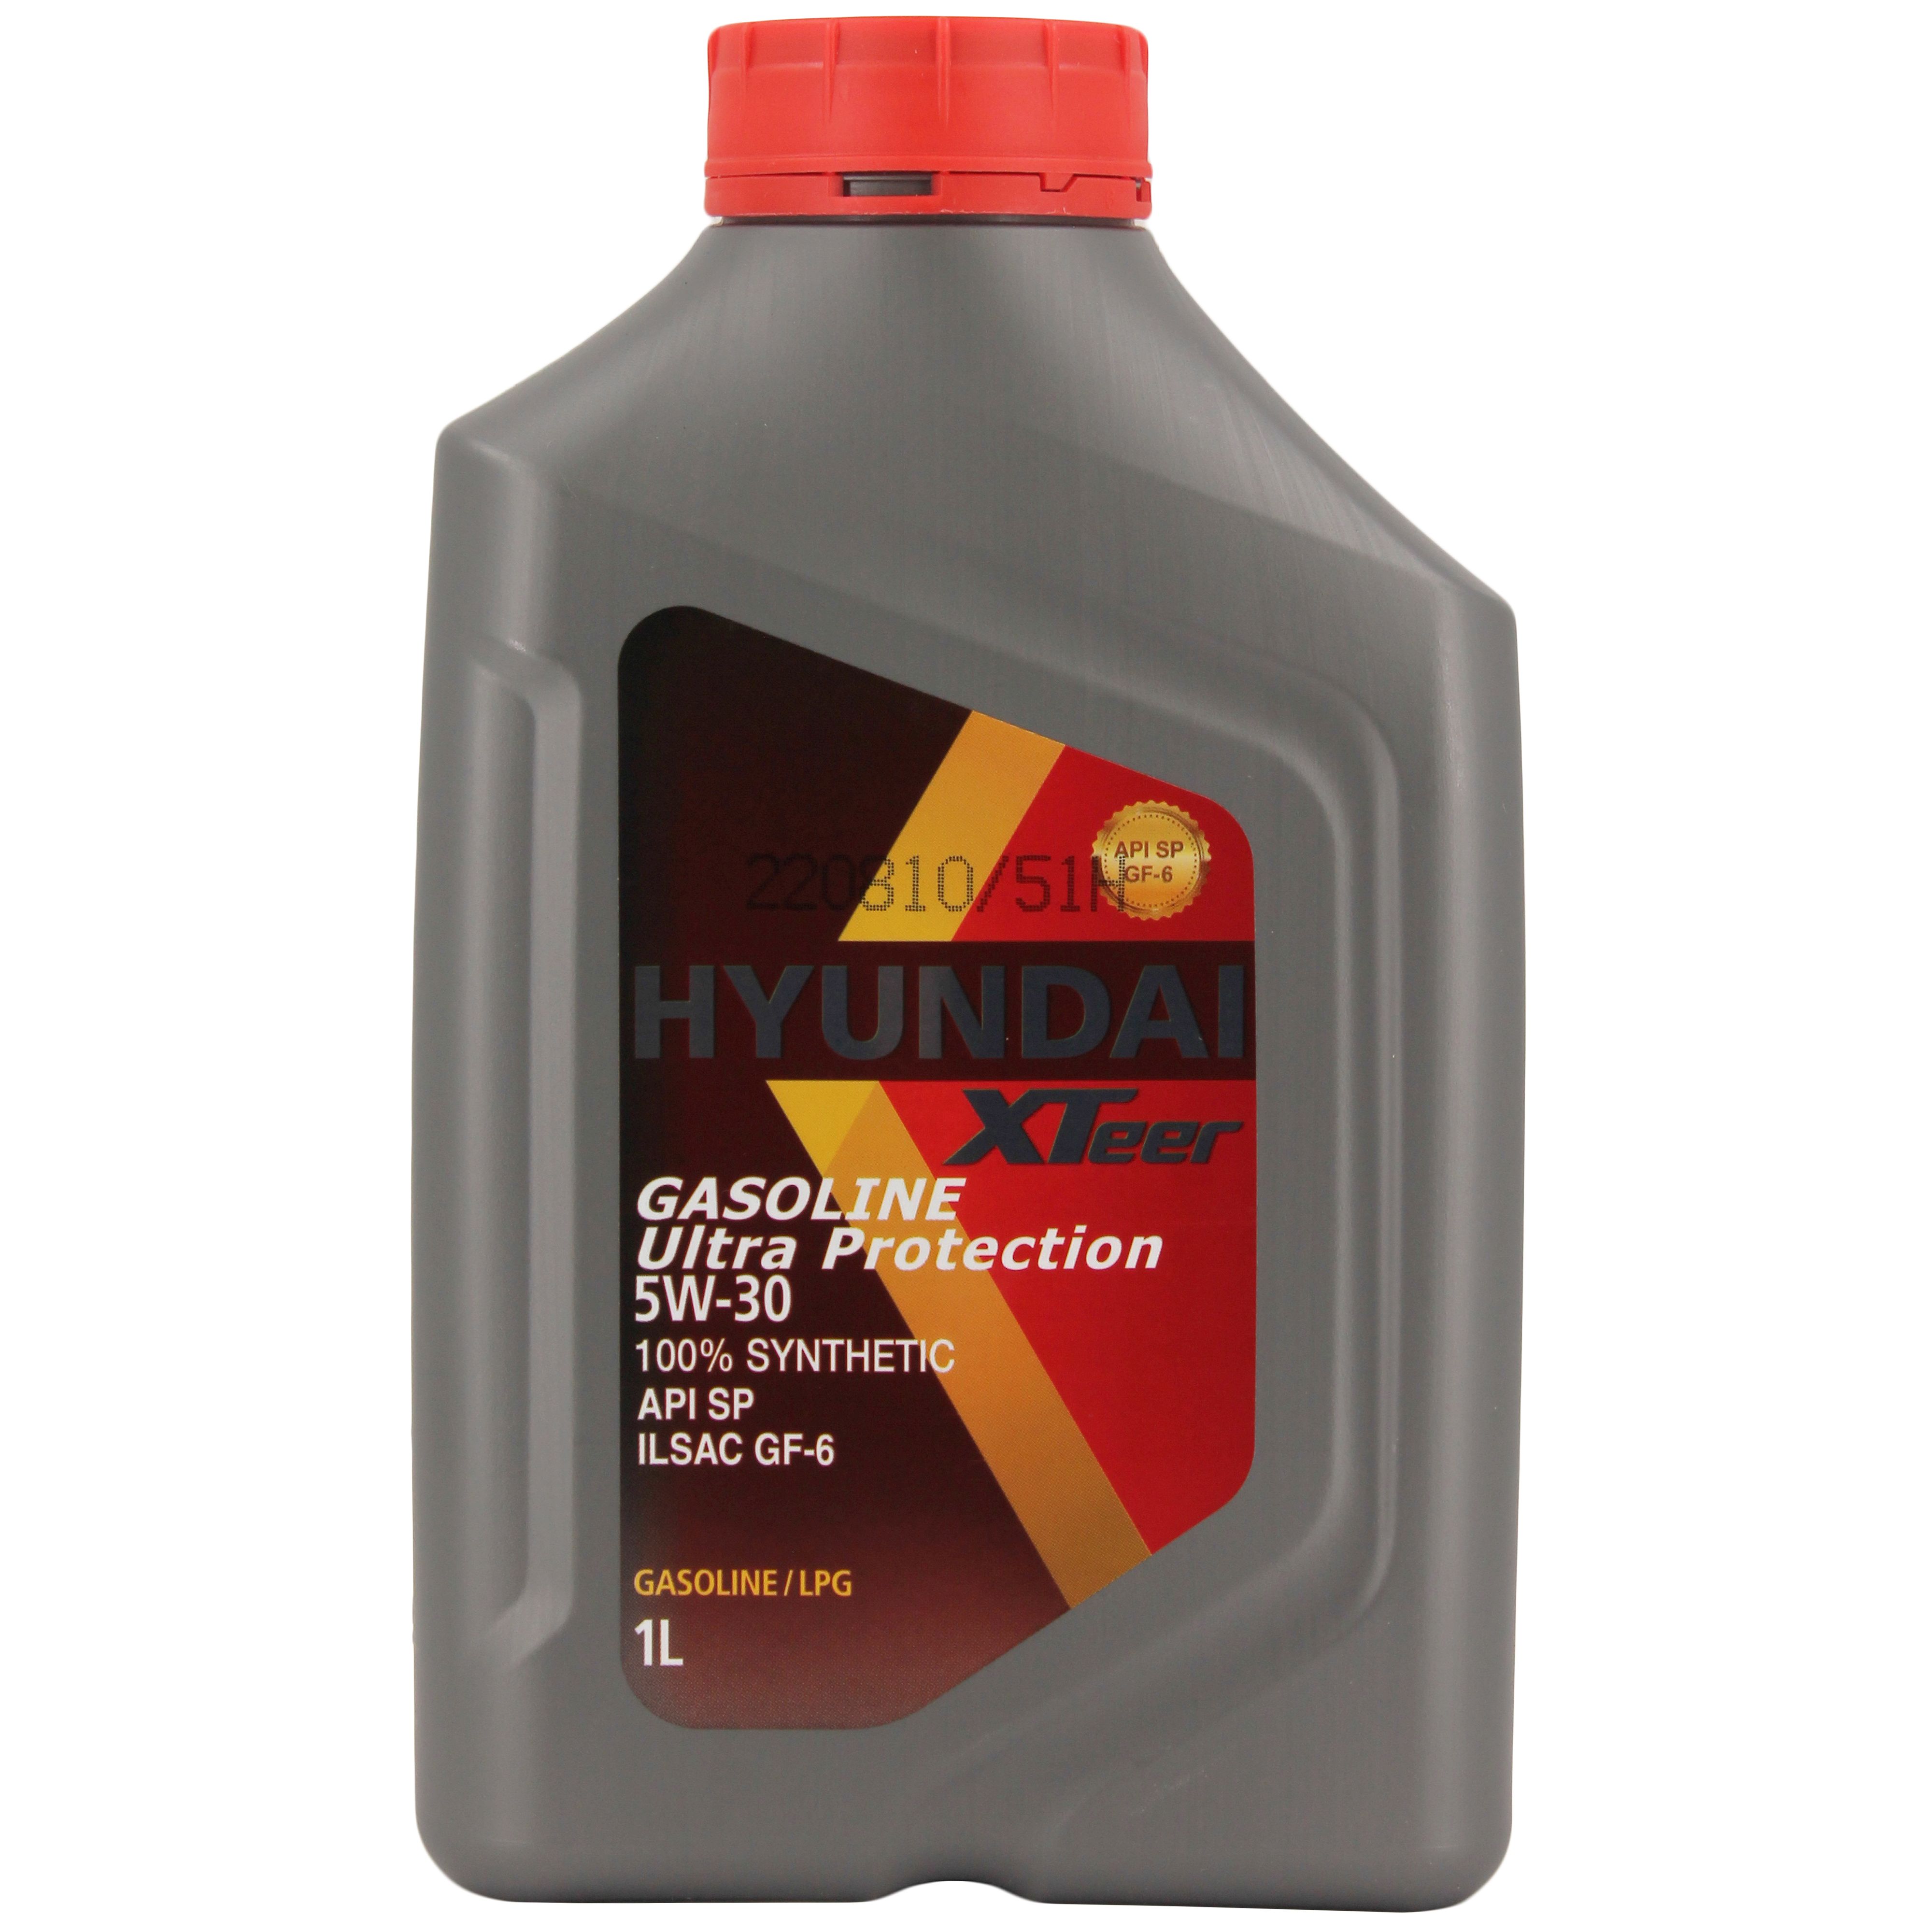 Масло моторное синтетическое "gasoline g700 5w-30", 1л. Hyundai XTEER масло gasoline g700 5w30 SP (4л.